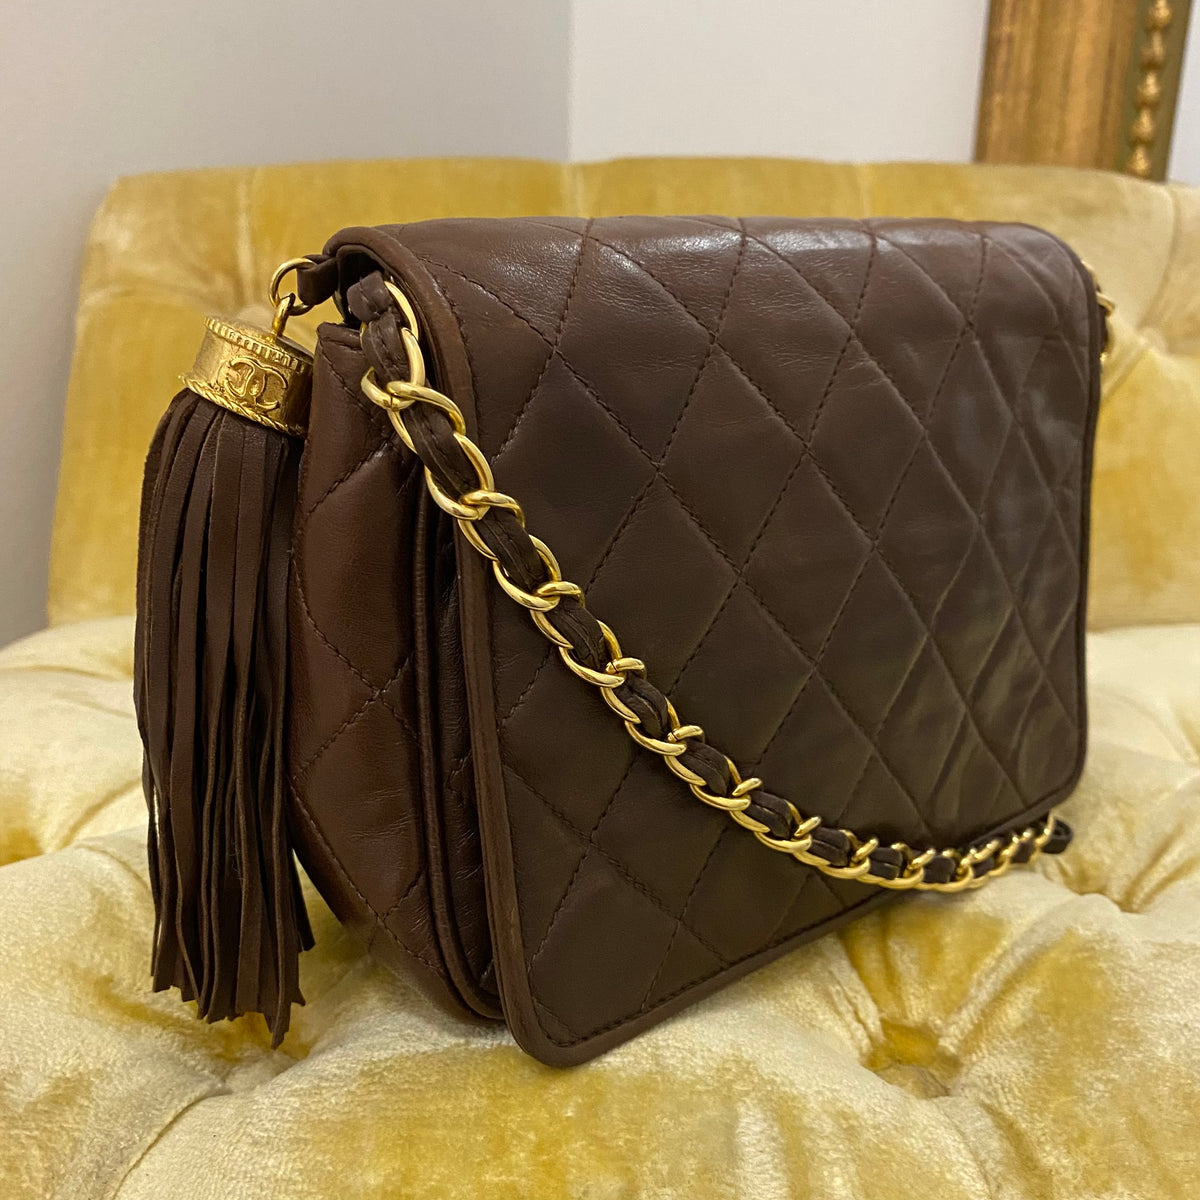 Chanel Vintage Tassel Flap Bag